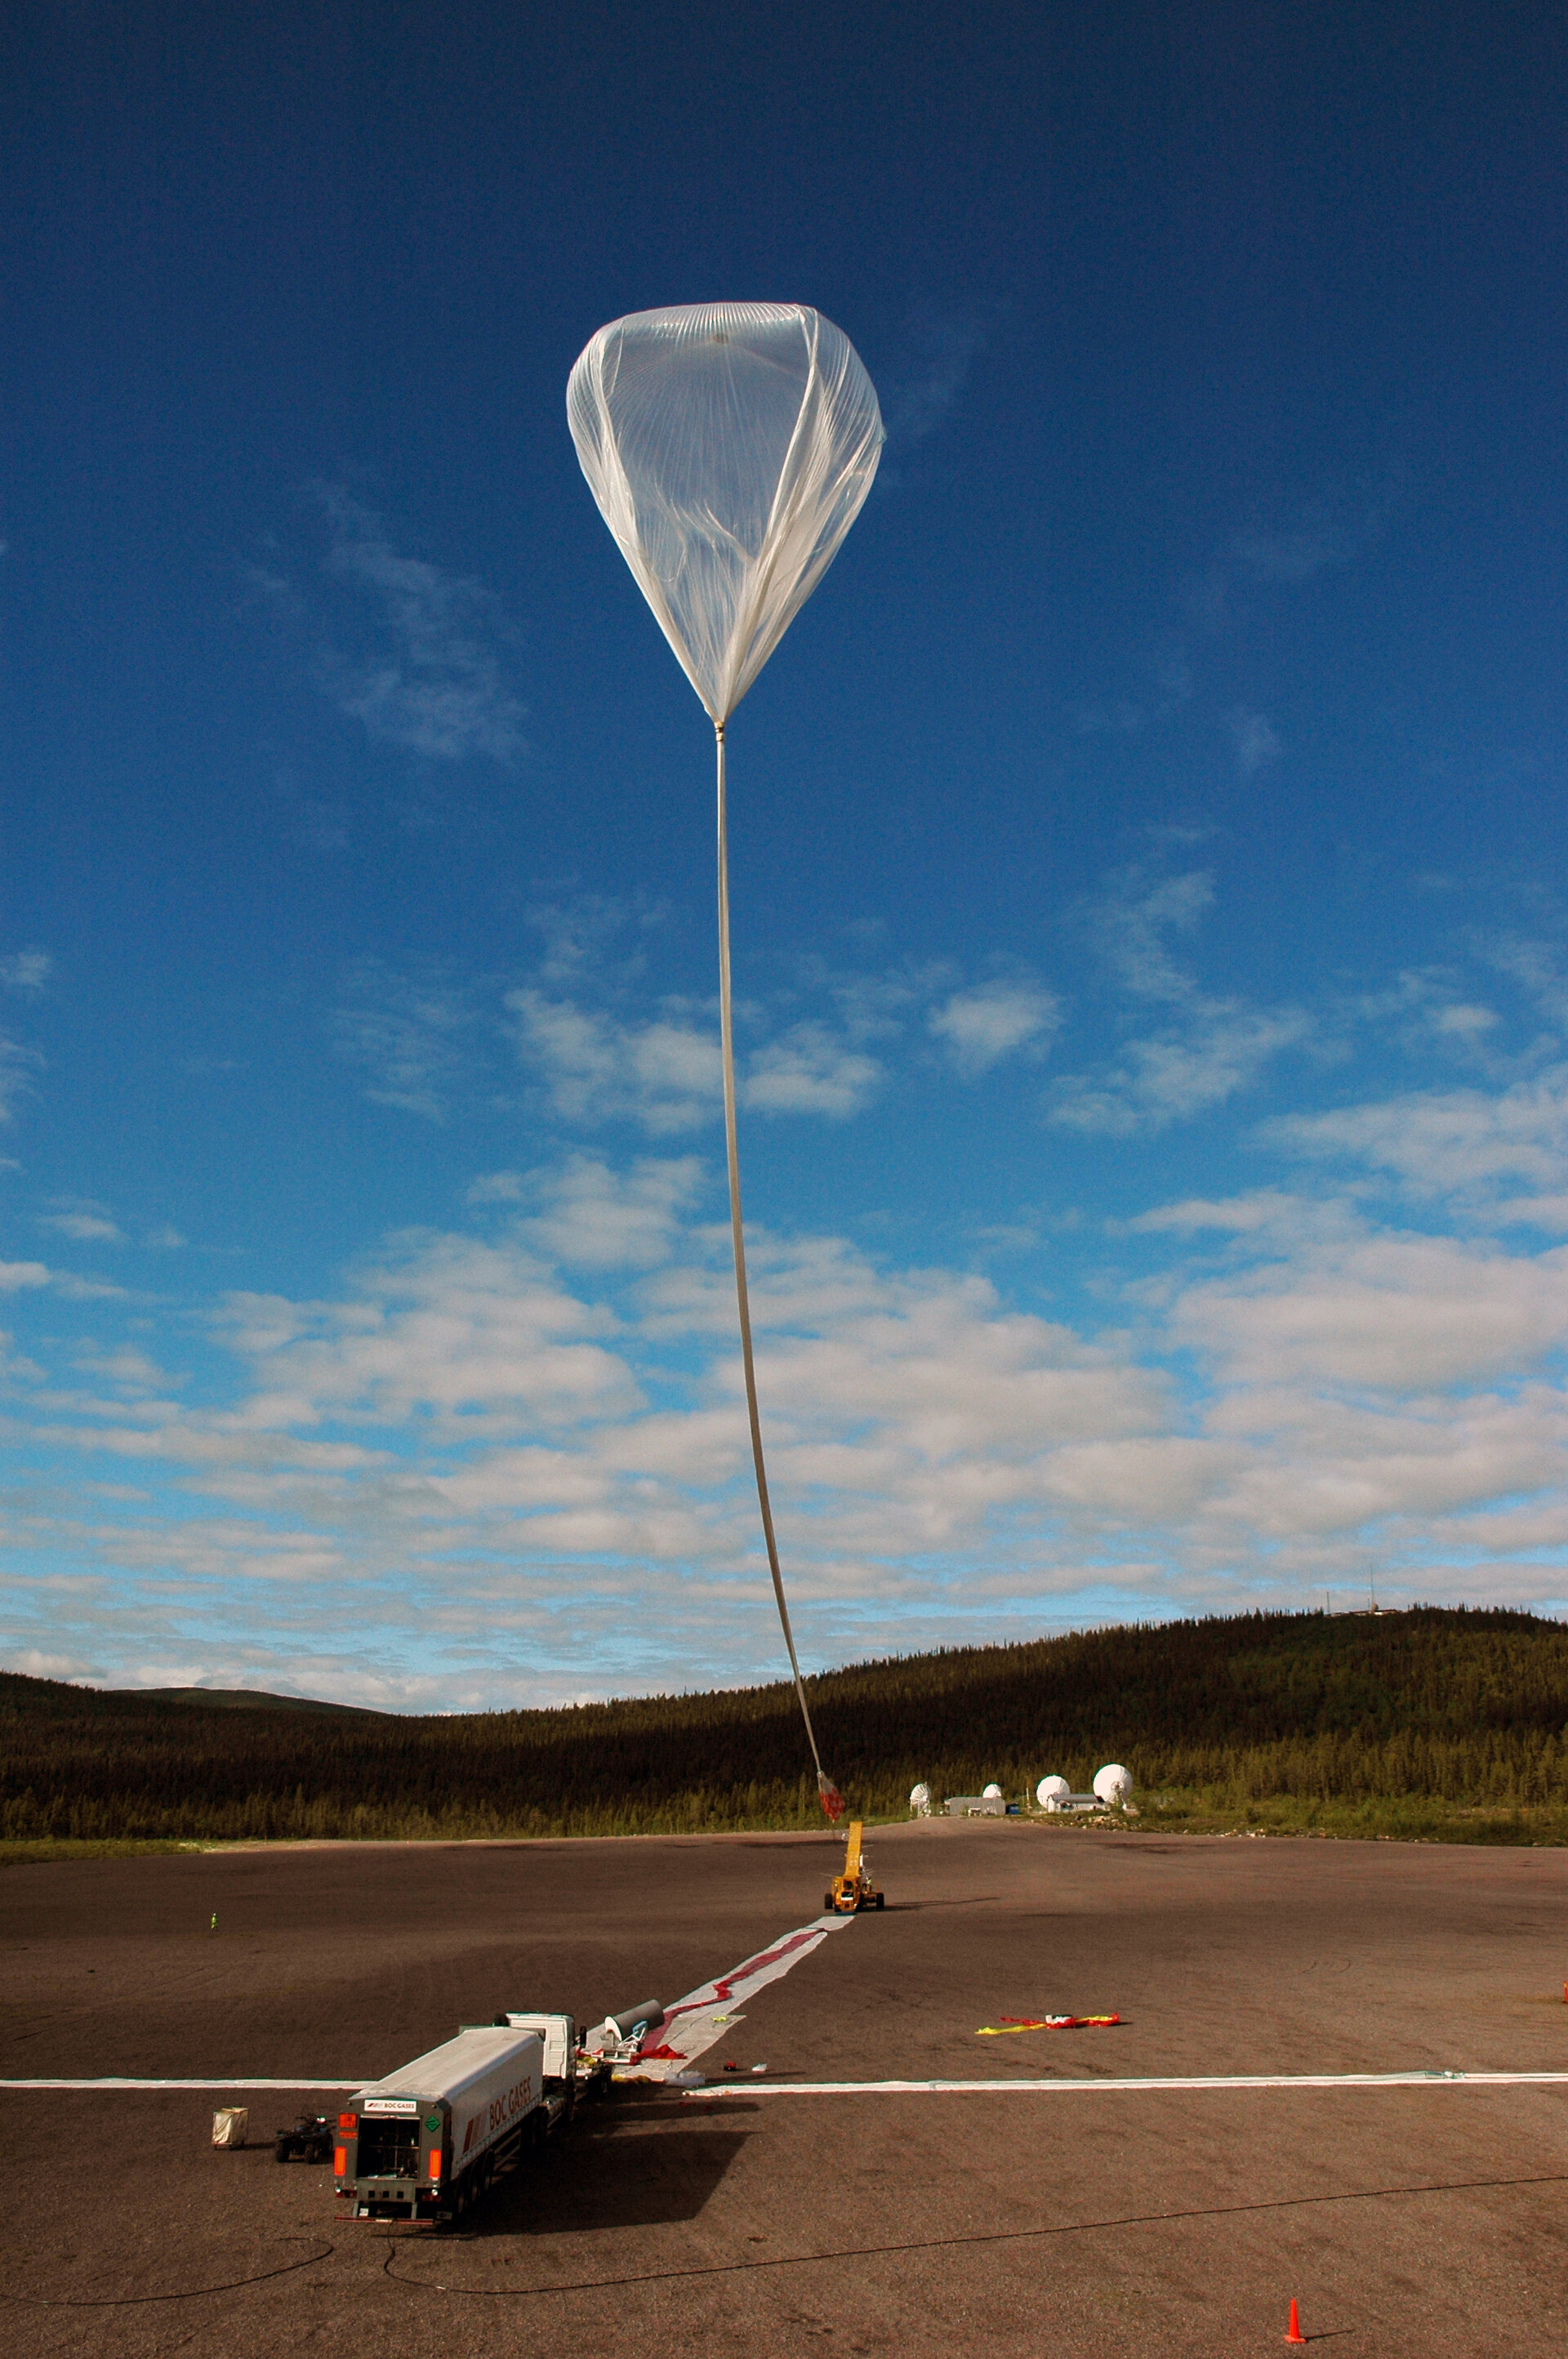 Den 100 meter stora ballongen lyfte klockan 07:07 lördagen den 28 juni från svenska Rymdbolagets Esrange Space Center